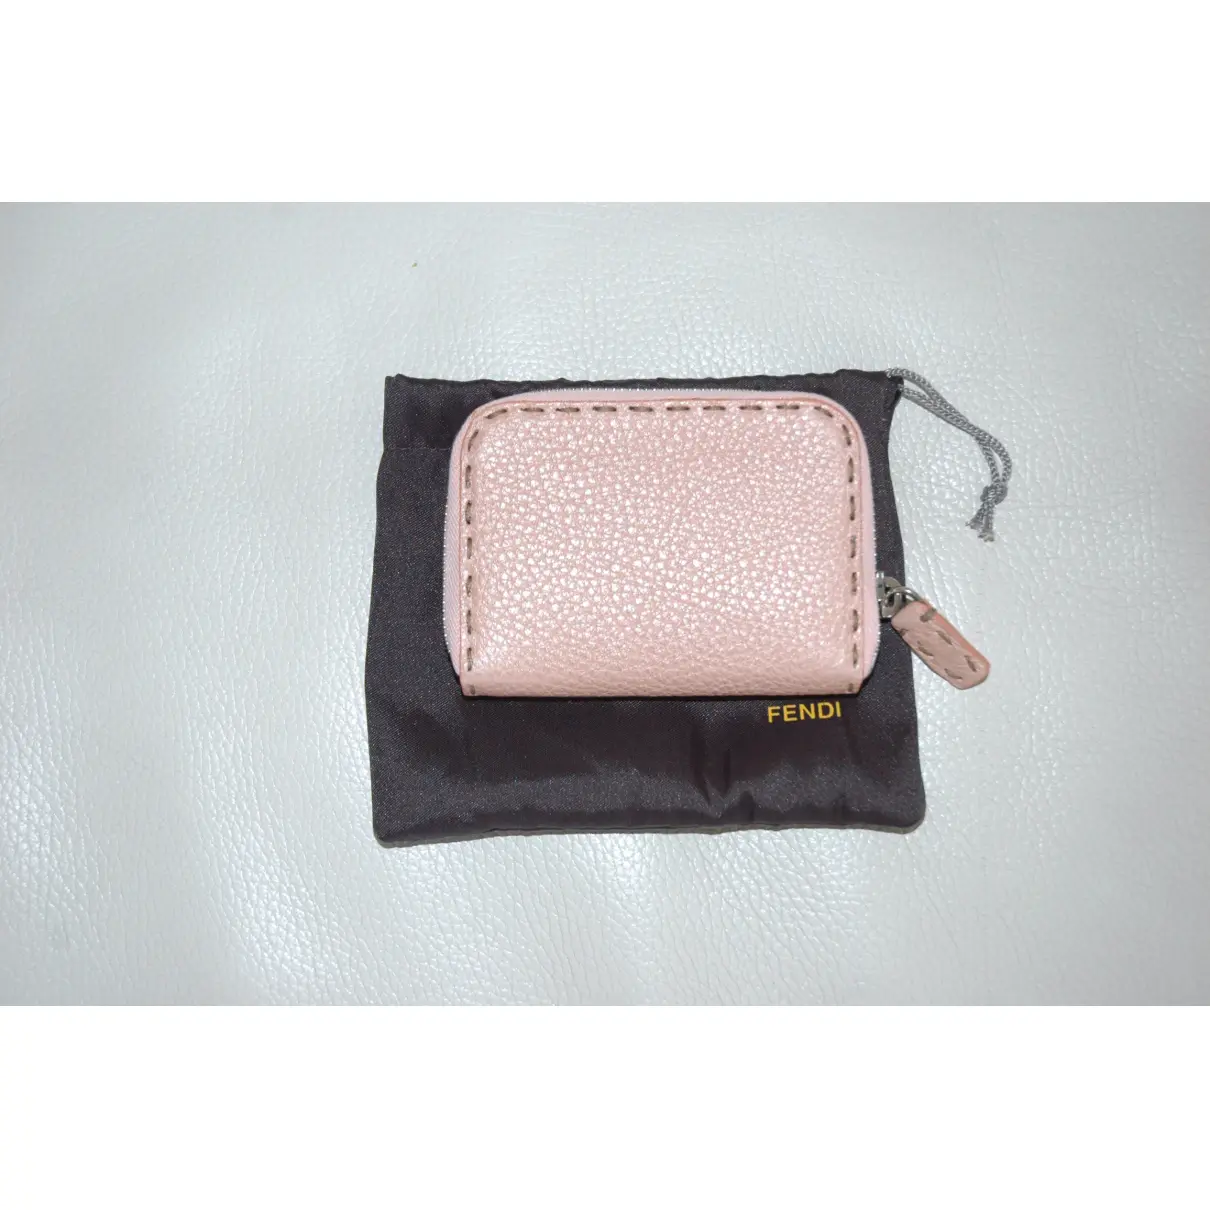 Leather purse Fendi - Vintage